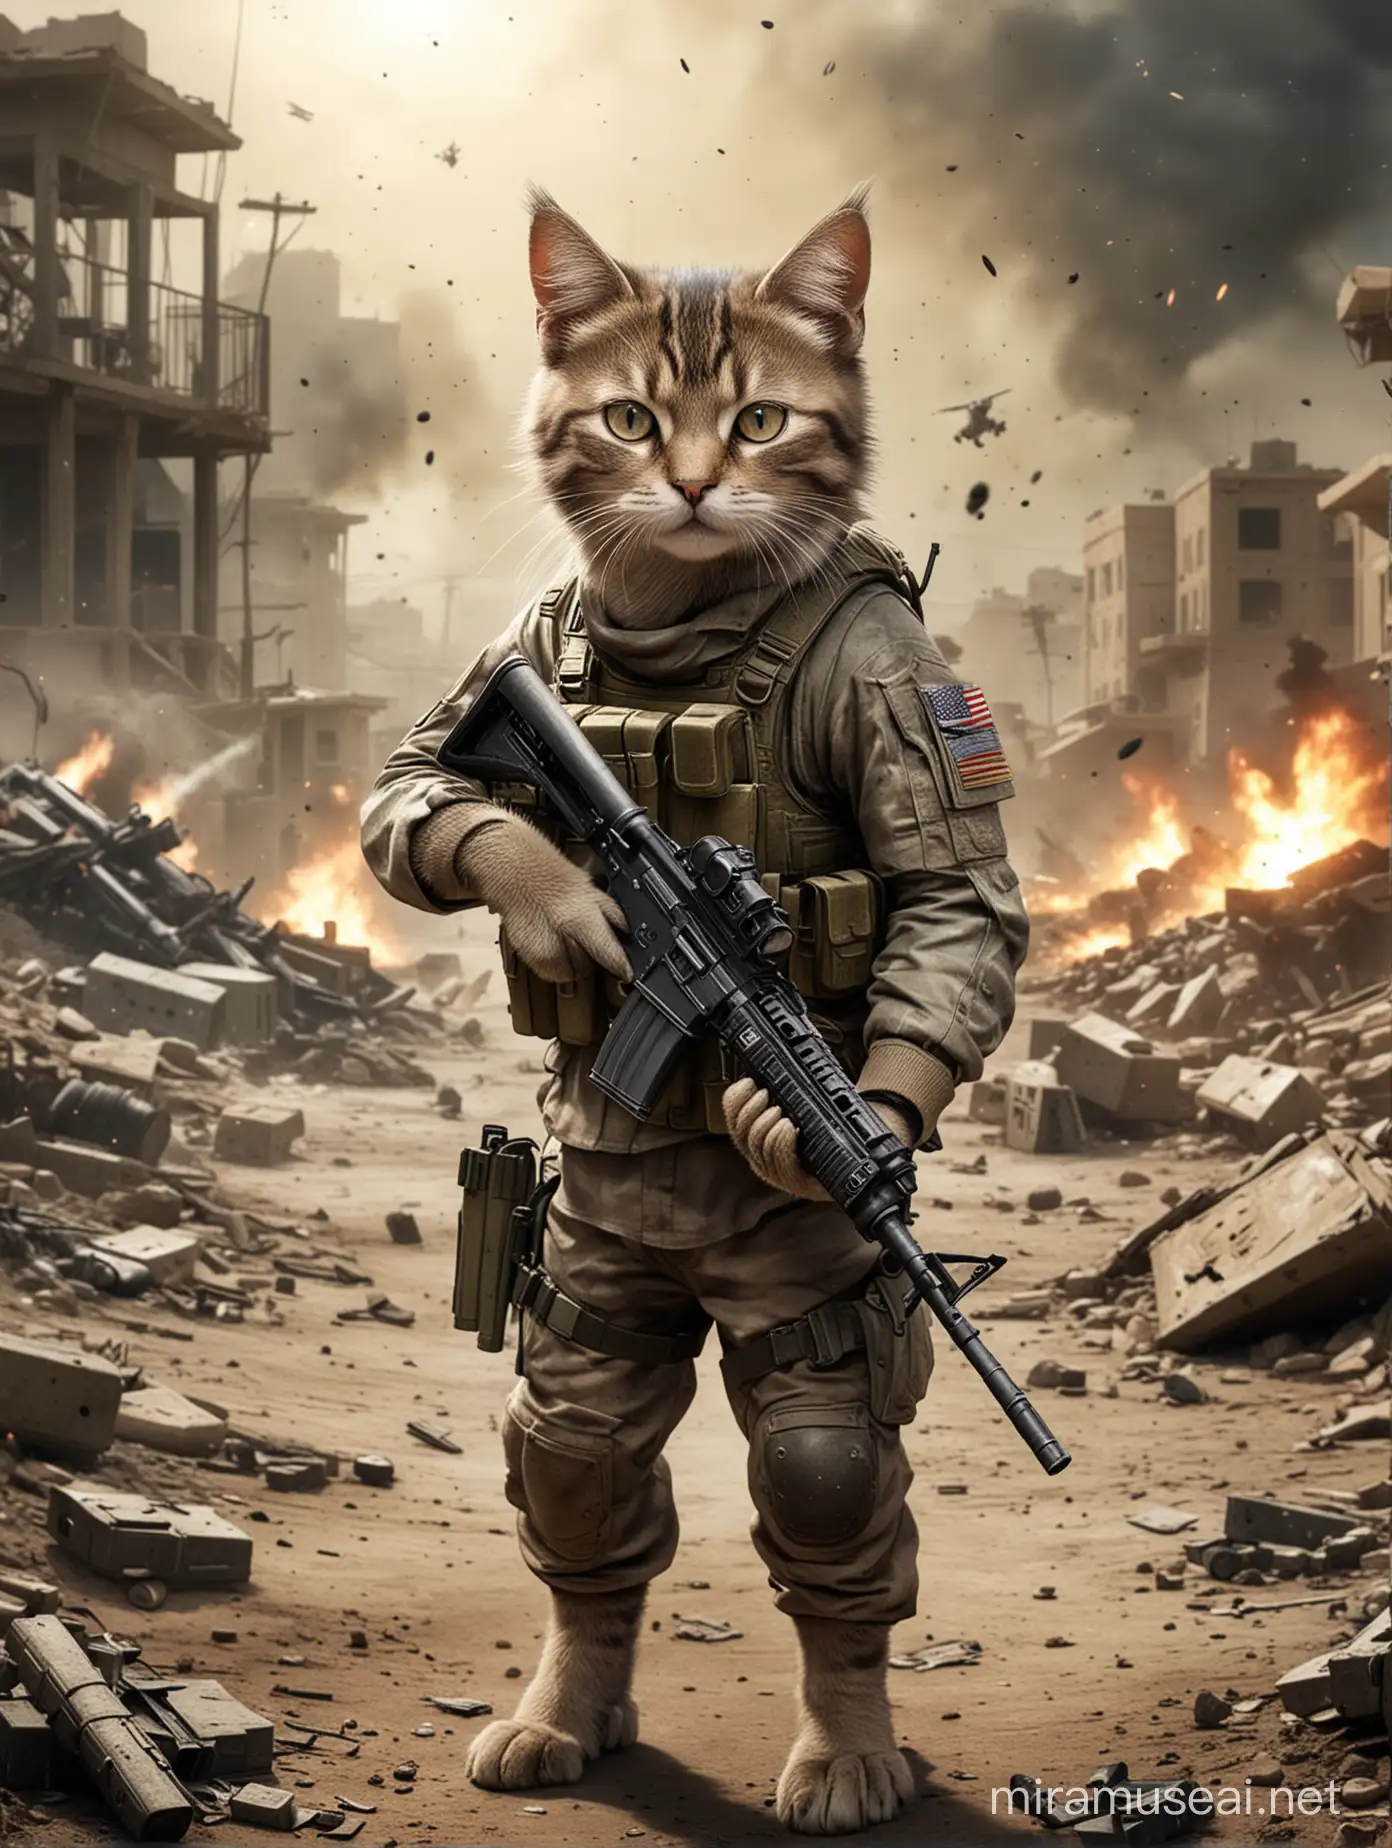 Kitty in call of duty battle field